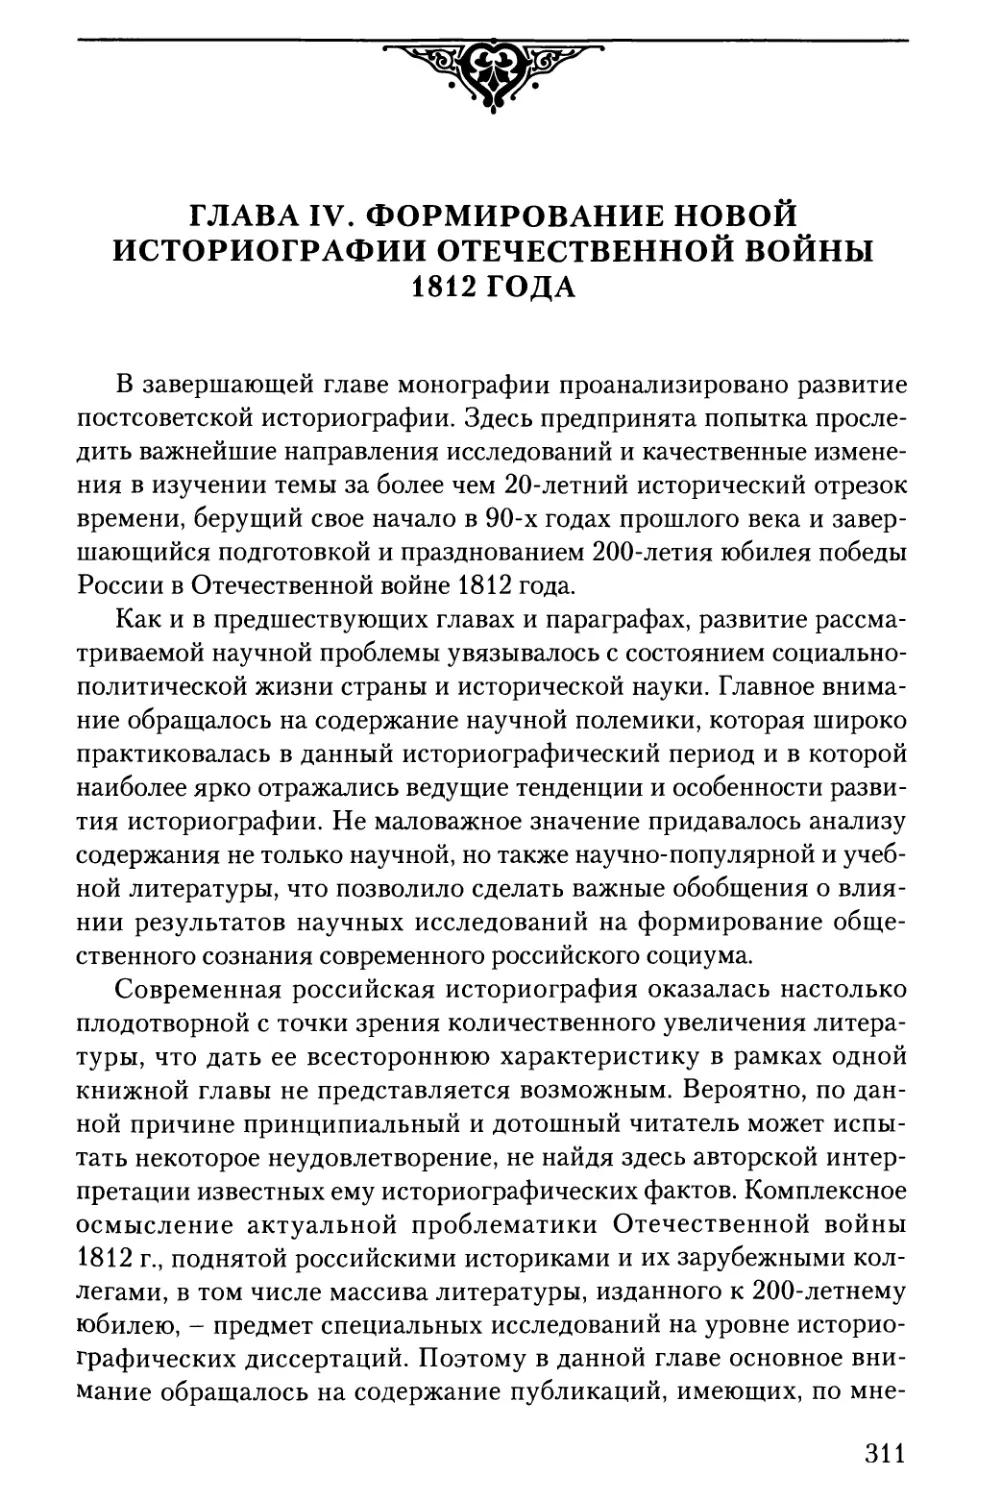 Глава IV. Формирование новой историографии Отечественной войны 1812 года